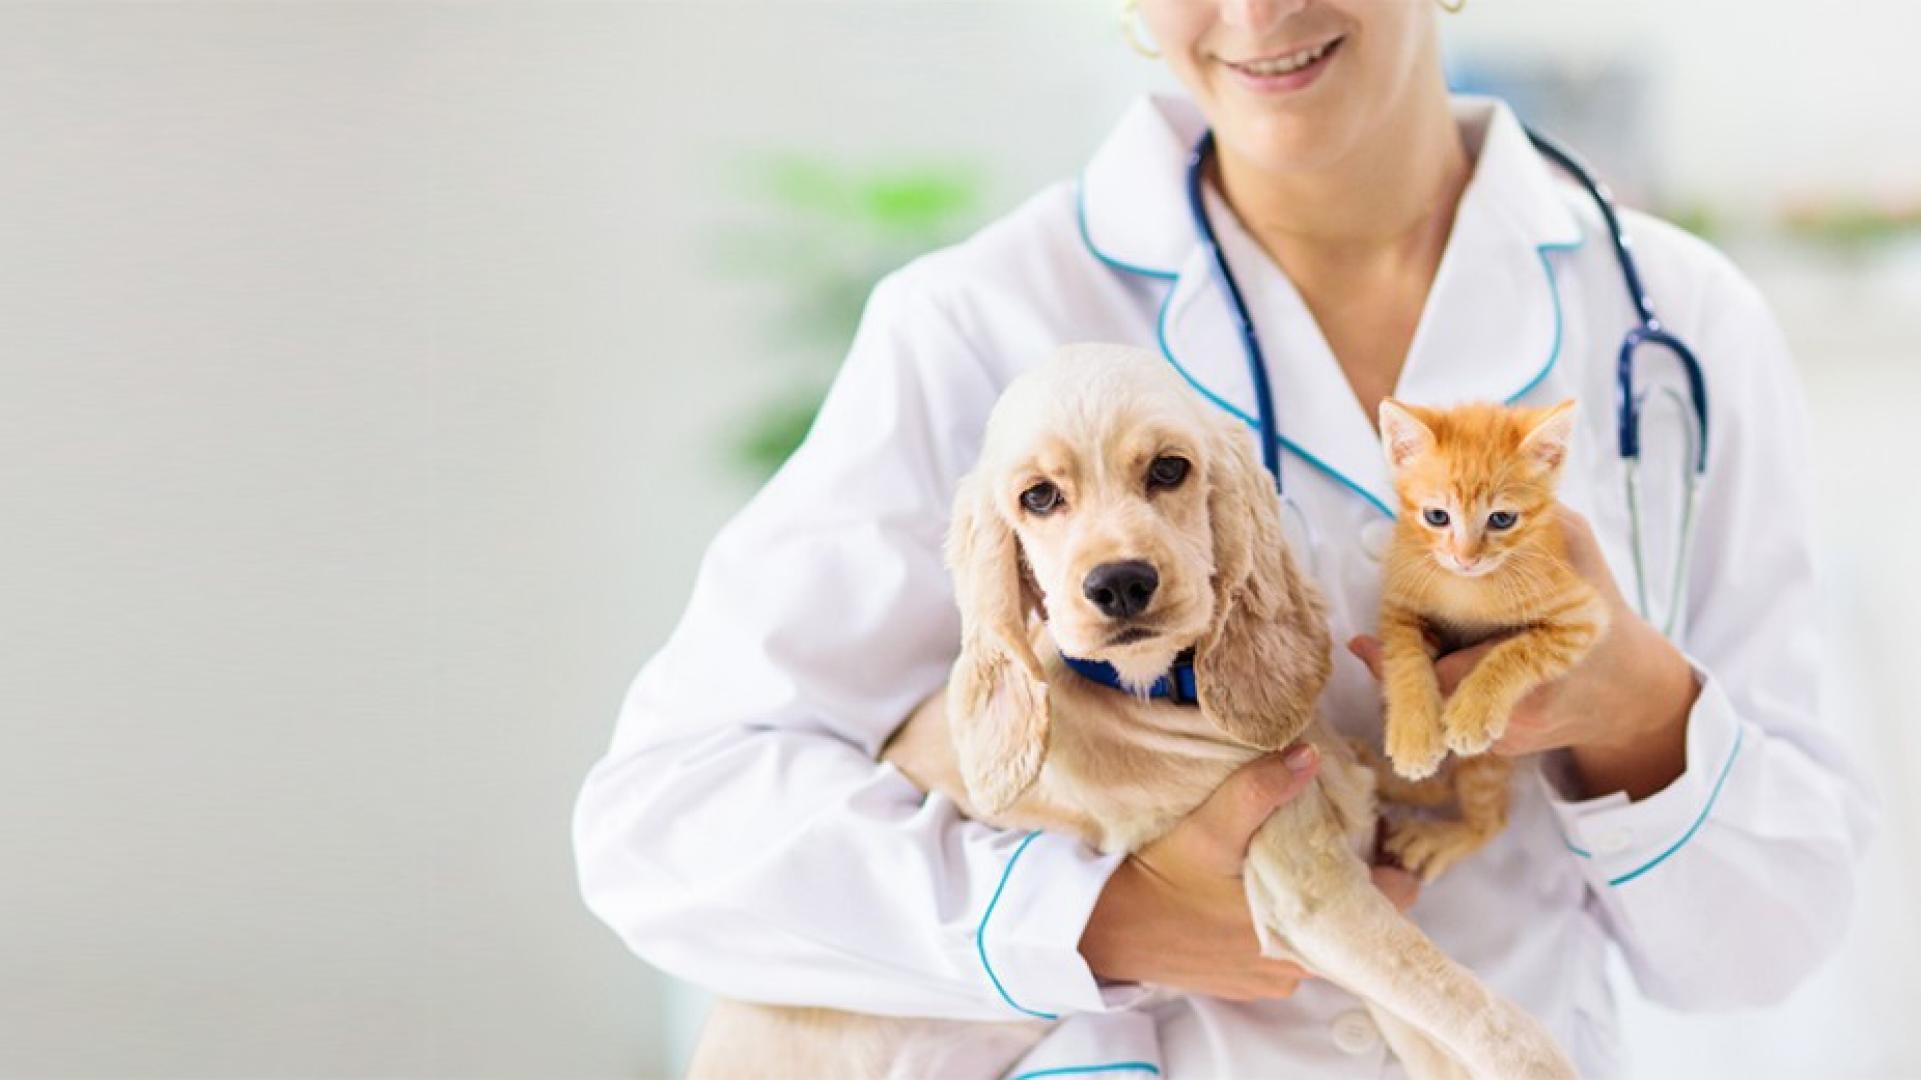 Eine Person im Arztkittel hat ein Stethoskop umhängen und einen Hund und eine Katze auf dem Arm